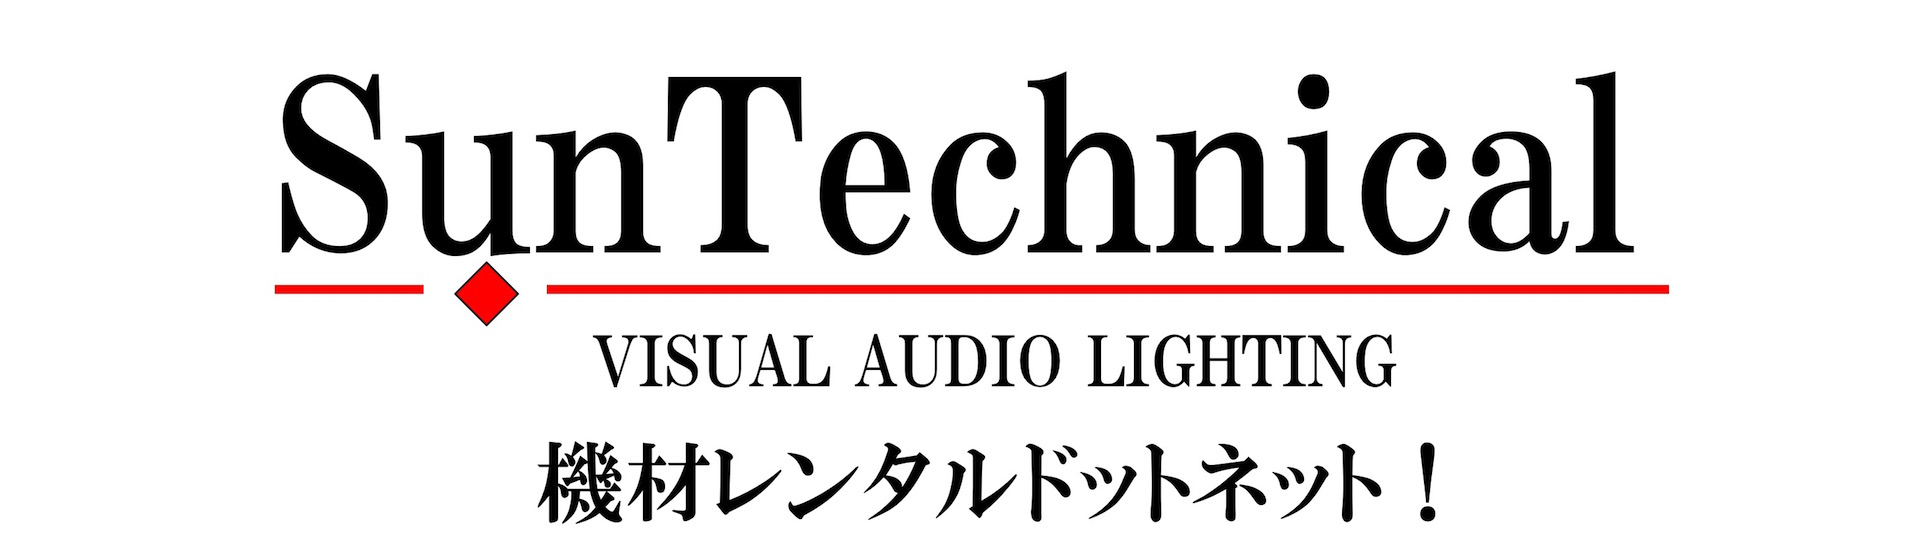 イベントの映像・音響・照明機材のレンタル、オペレーションはお任せください！